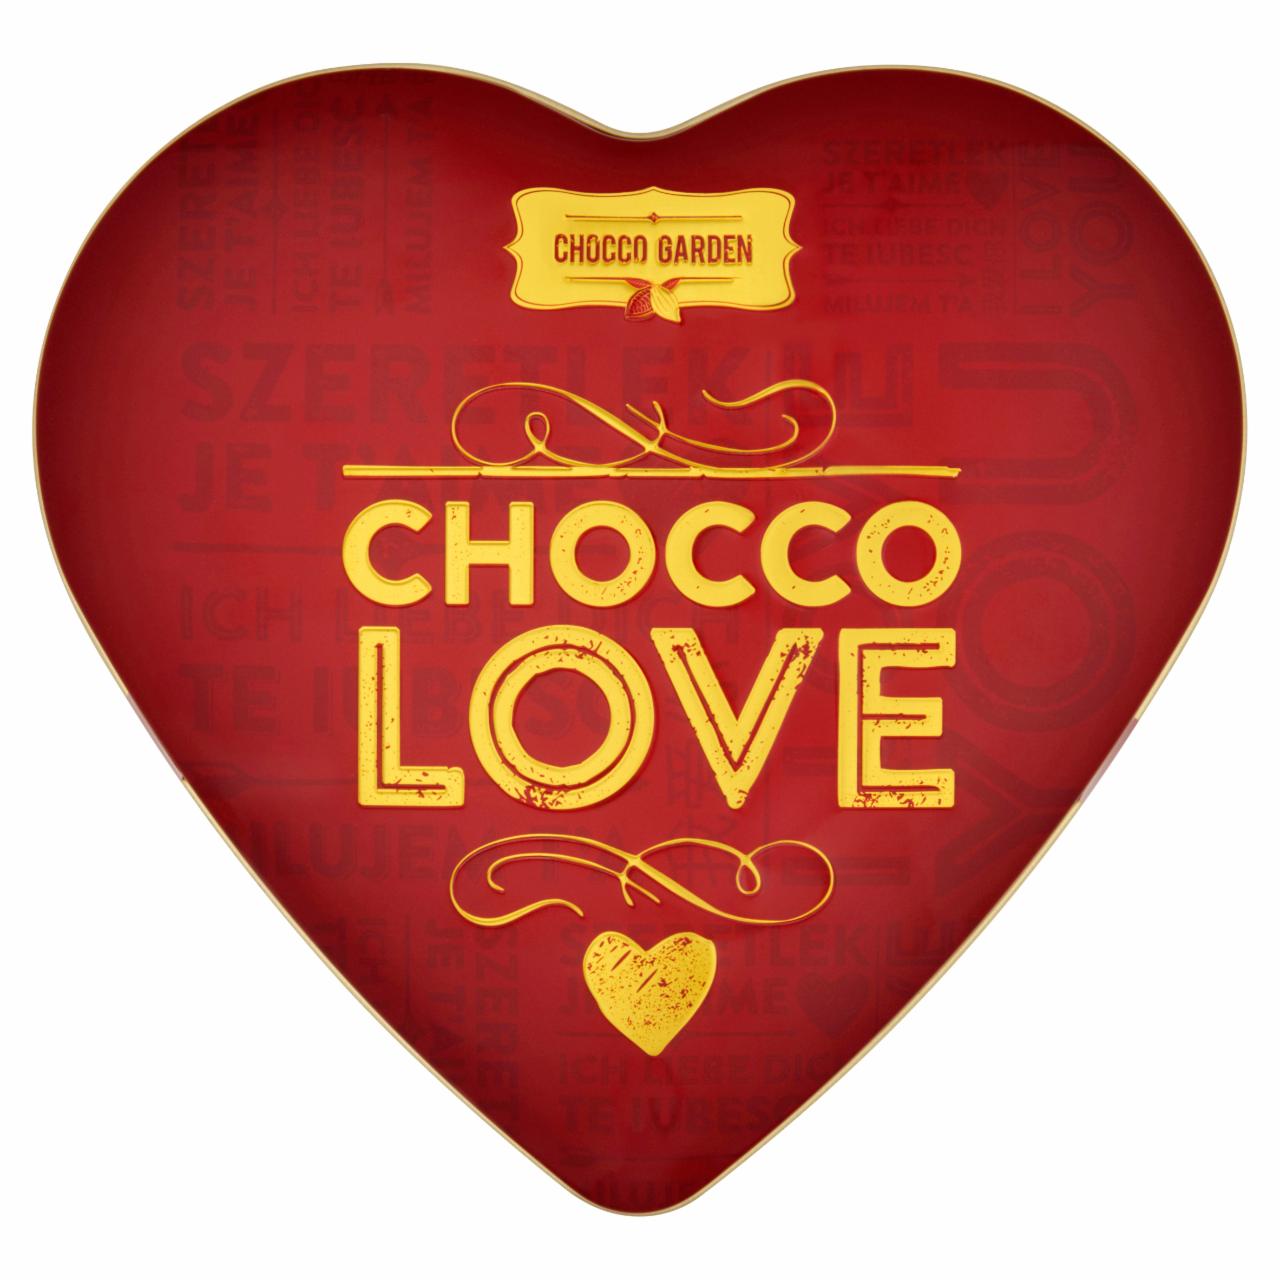 Képek - Chocco Garden Chocco Love étcsokoládé desszert rumos és meggyes töltelékkel 106 g